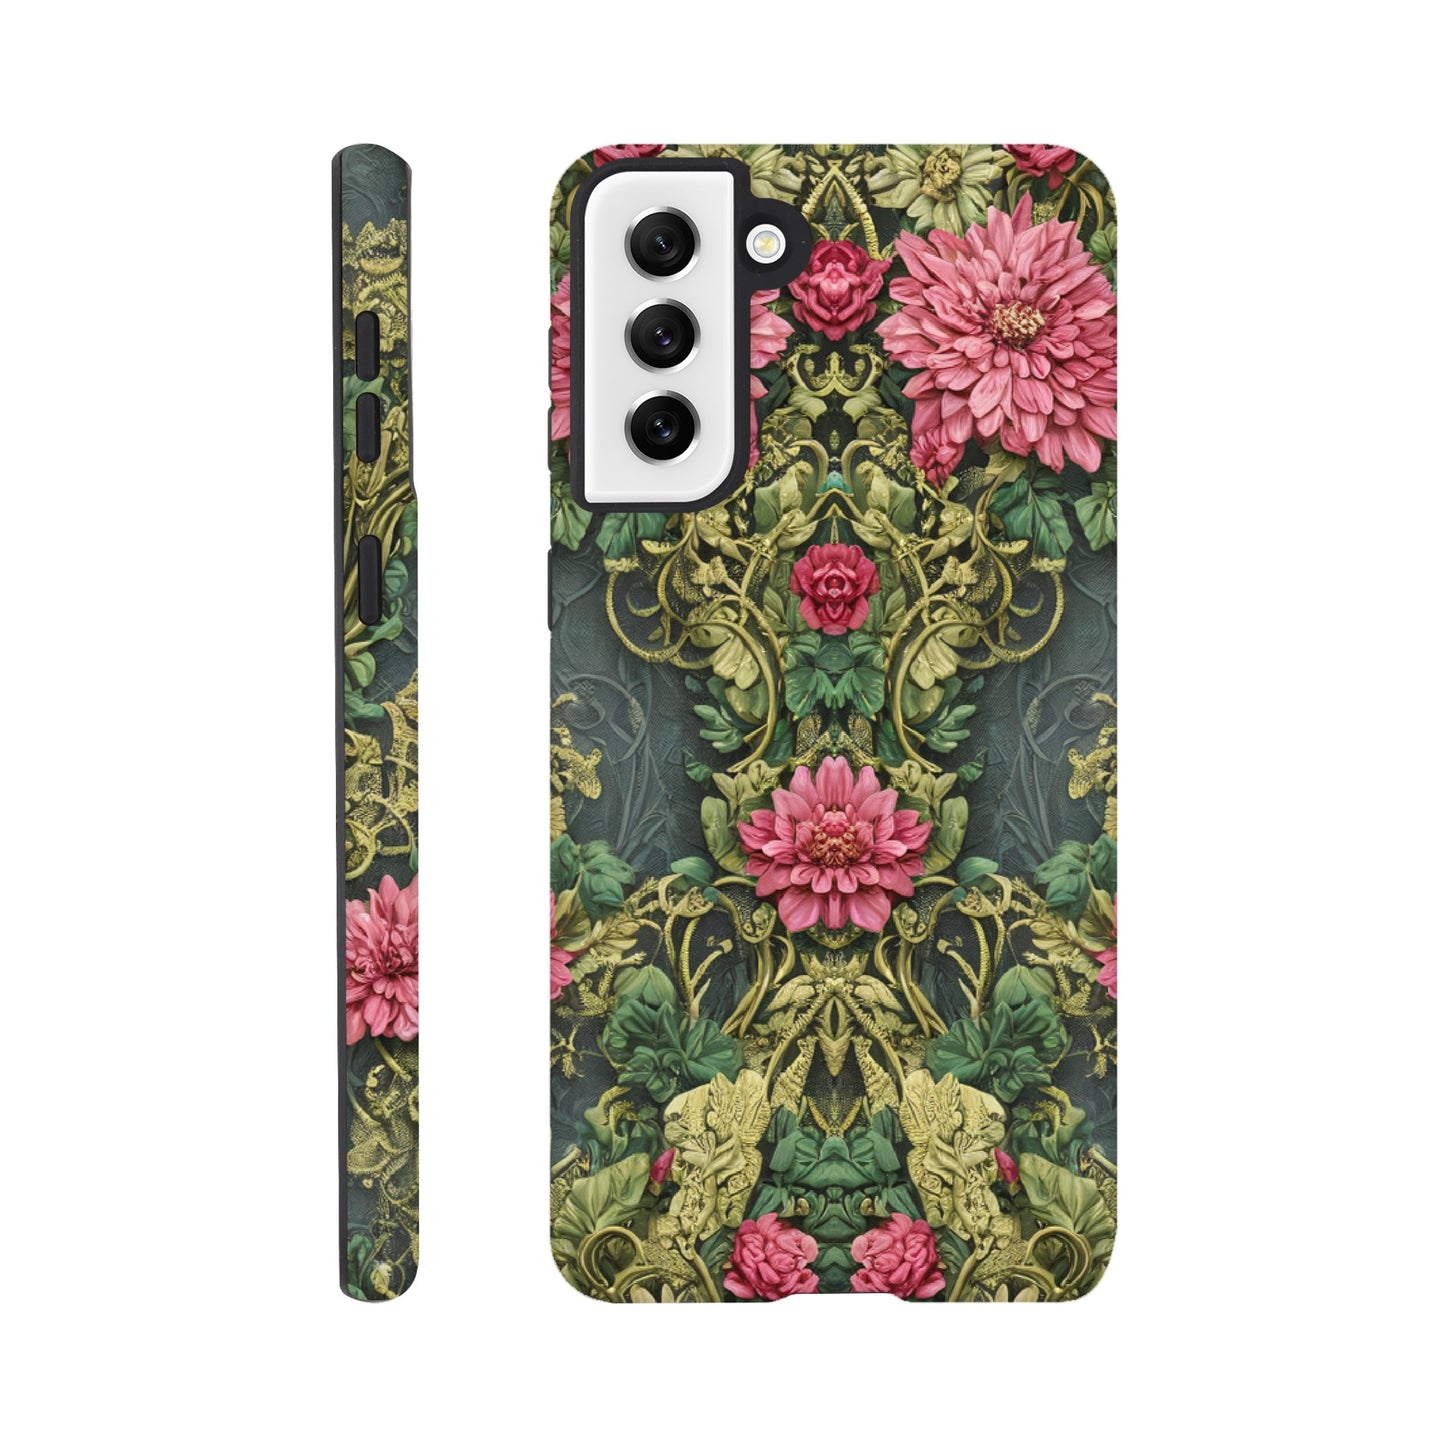 3D Floral : Andriod Tough case